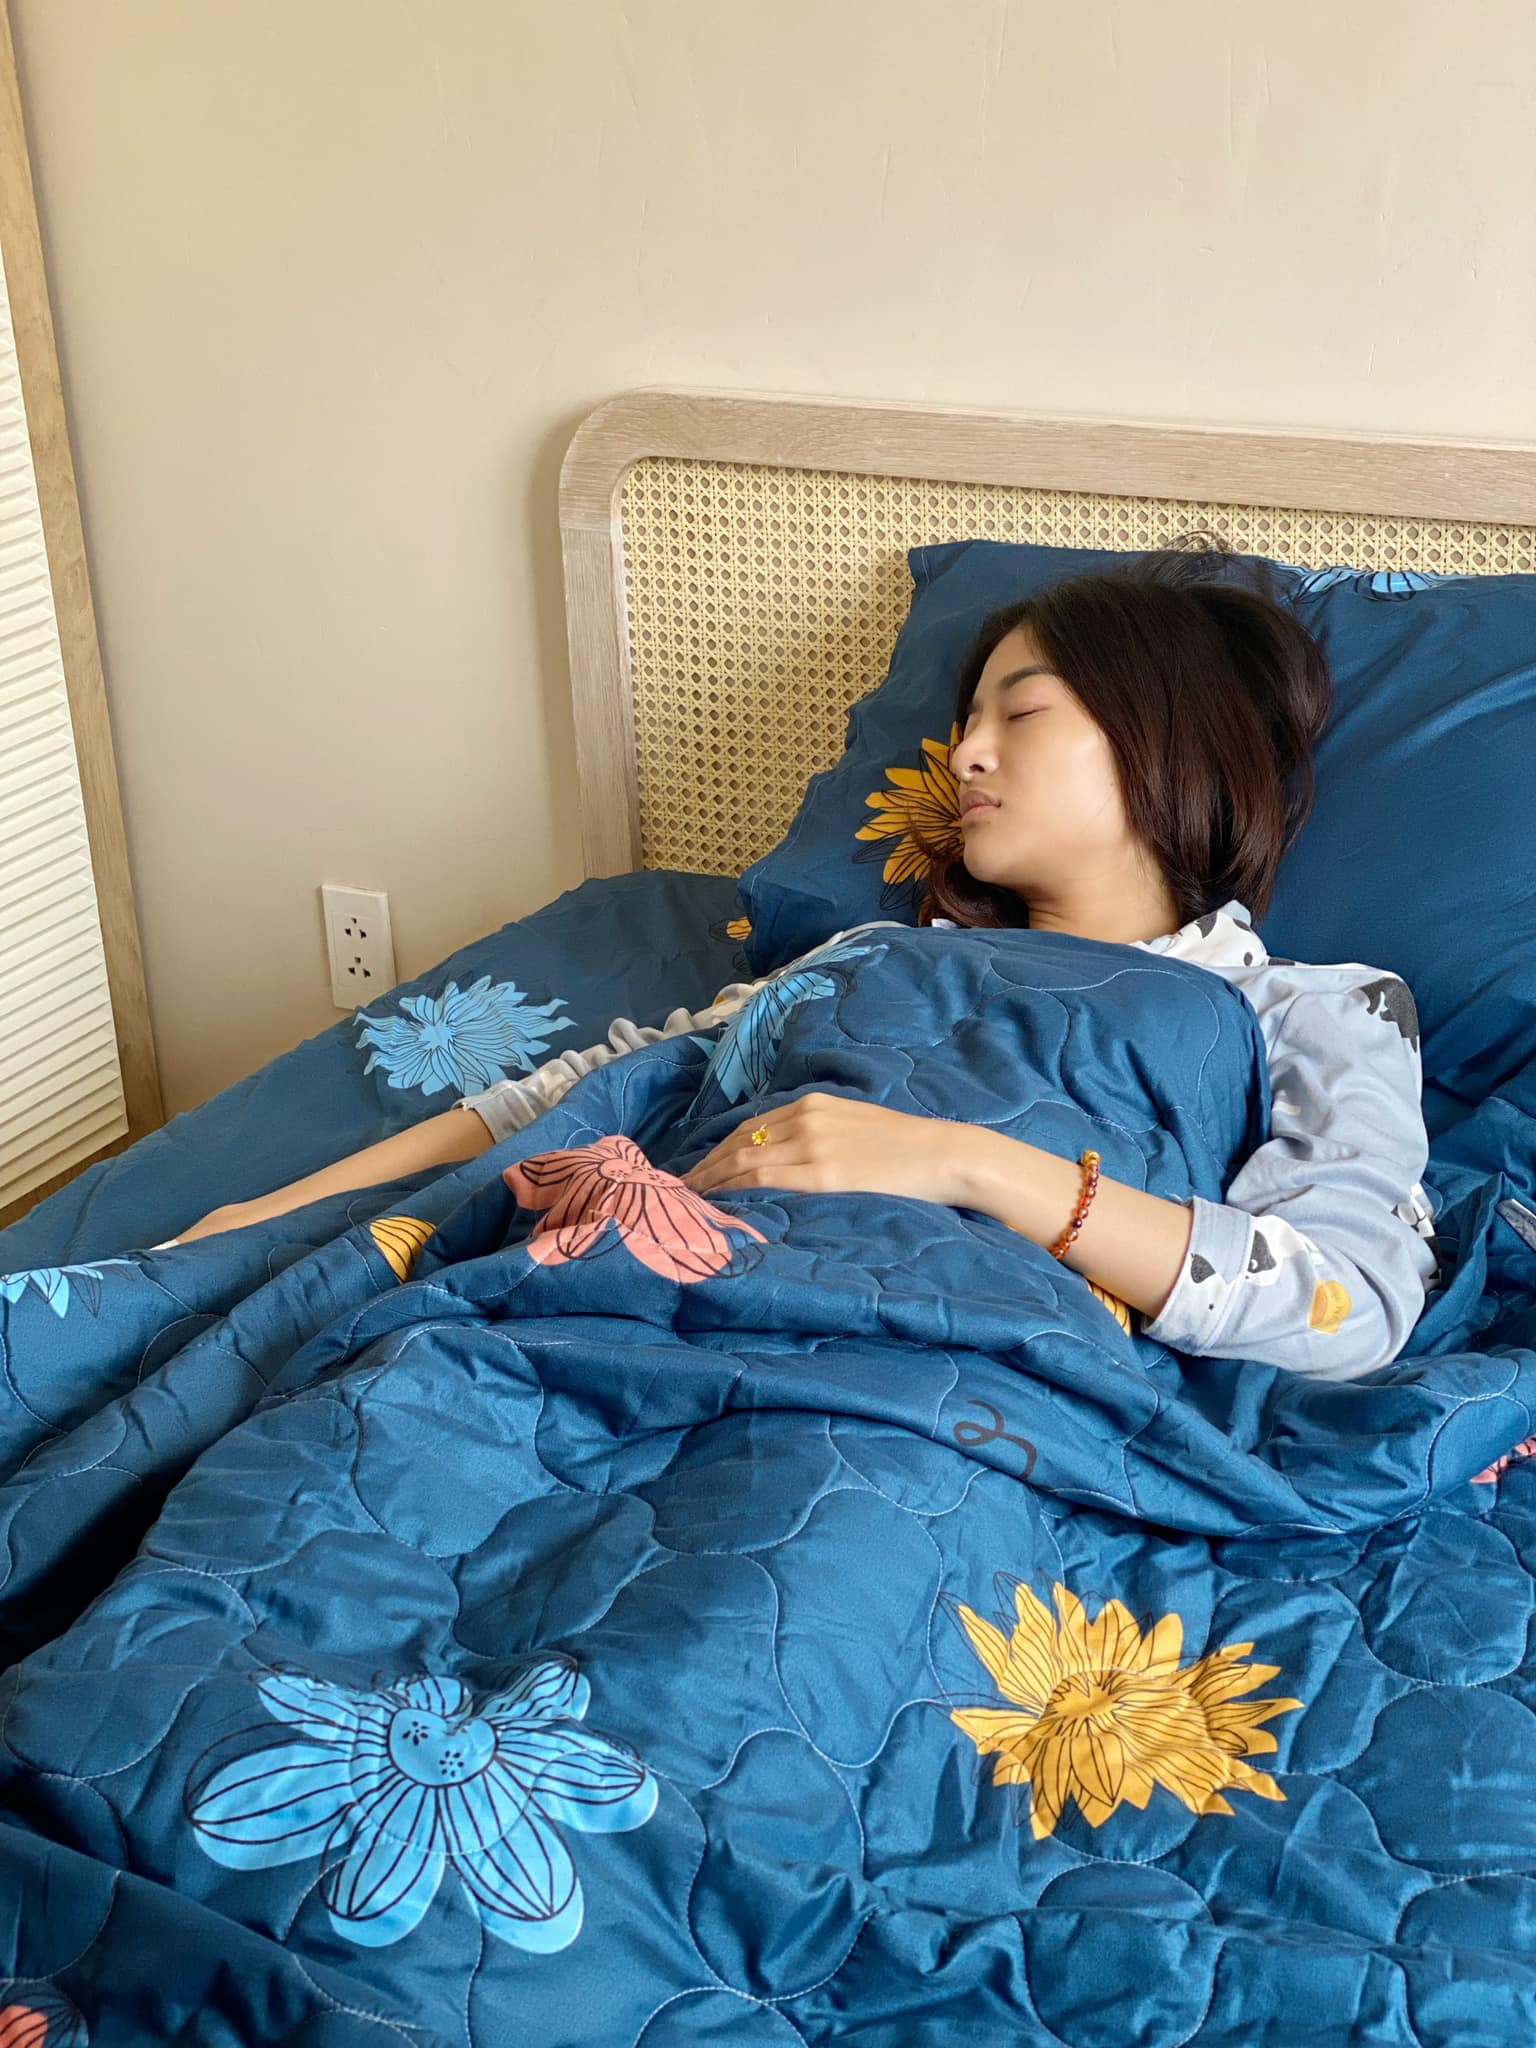 Á hậu Kiều Loan đón sinh nhật trên giường bệnh, dời lịch ra MV vì bị suy nhược - ảnh 2